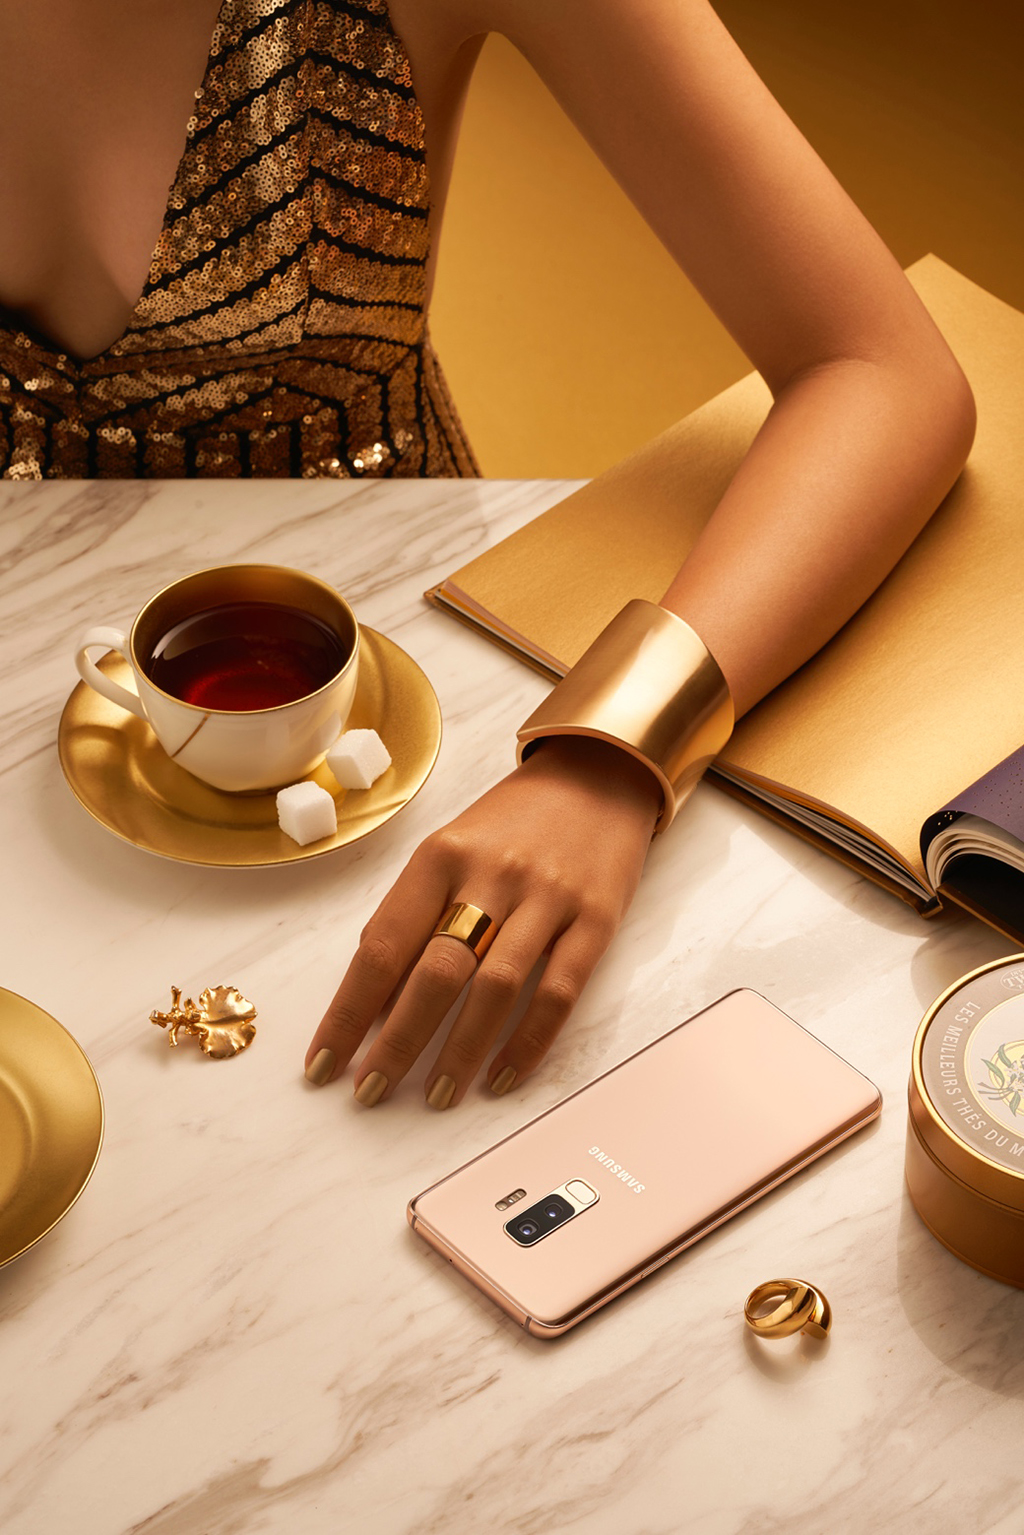 Galaxy S9+ Hoàng Kim đã tái định nghĩa một chiếc smartphone đẳng cấp. Với diện mạo thời trang sang trọng, chiếc smartphone Hoàng Kim này đã trở thành món phụ kiện sang chất chức năng của chiếc điện thoại cao cấp này? 